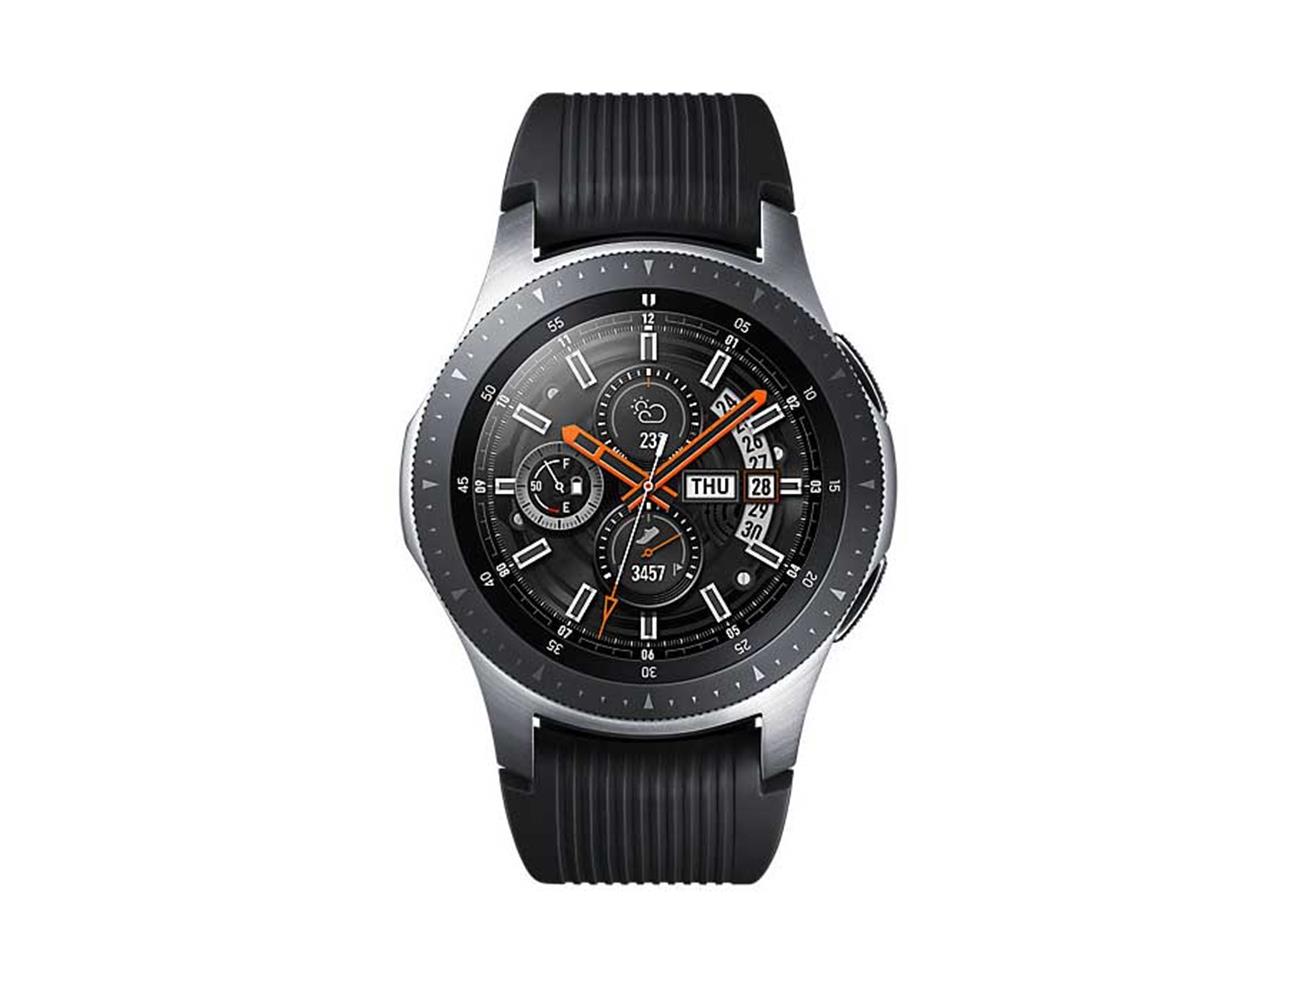 Samsung Galaxy Smart Watch 46mm - Silver| Blink Kuwait